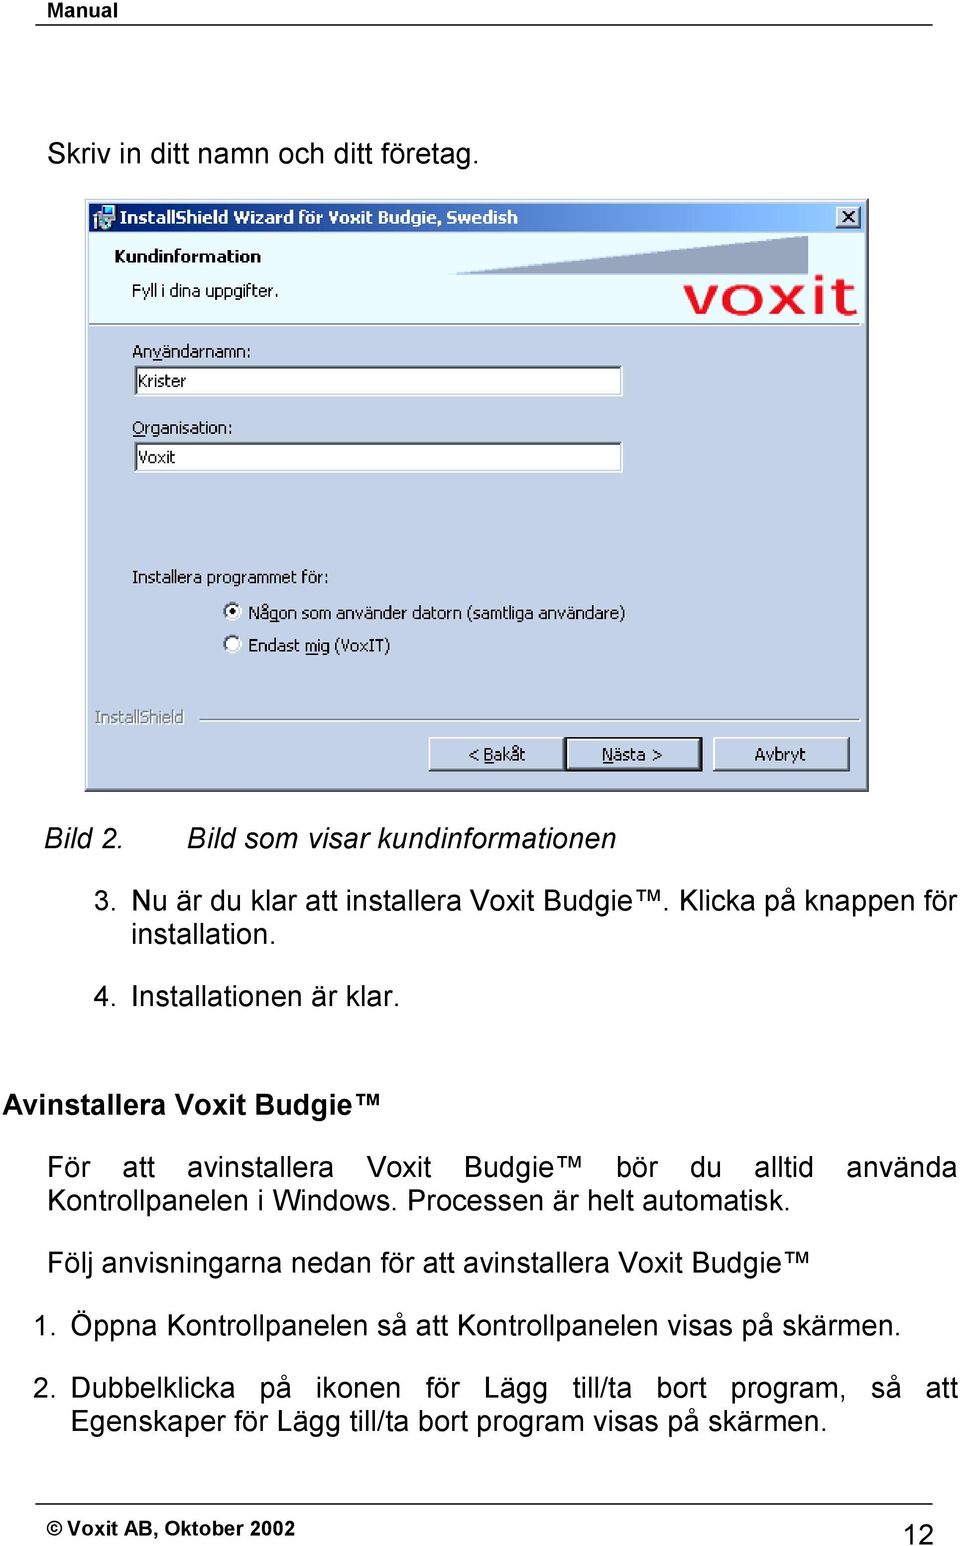 Avinstallera Voxit Budgie För att avinstallera Voxit Budgie bör du alltid använda Kontrollpanelen i Windows. Processen är helt automatisk.